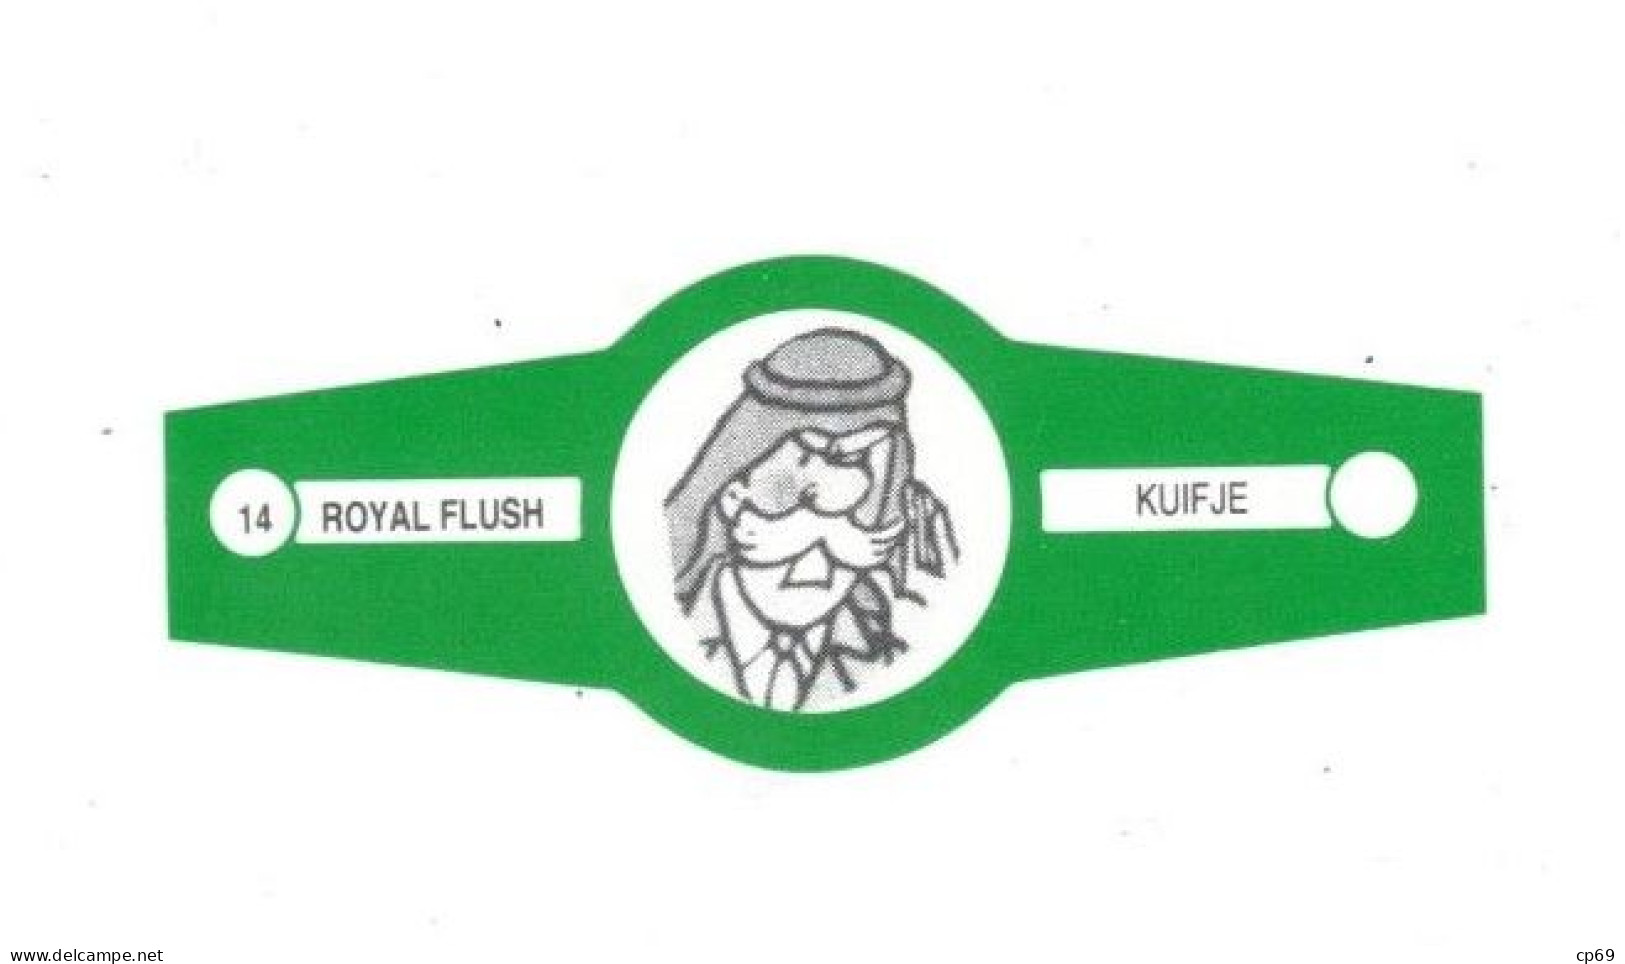 14) Bague De Cigare Série Tintin Verte Royal Flush Kuifje Colonel Faud Armée Saoudienne En Superbe.Etat - Objets Publicitaires